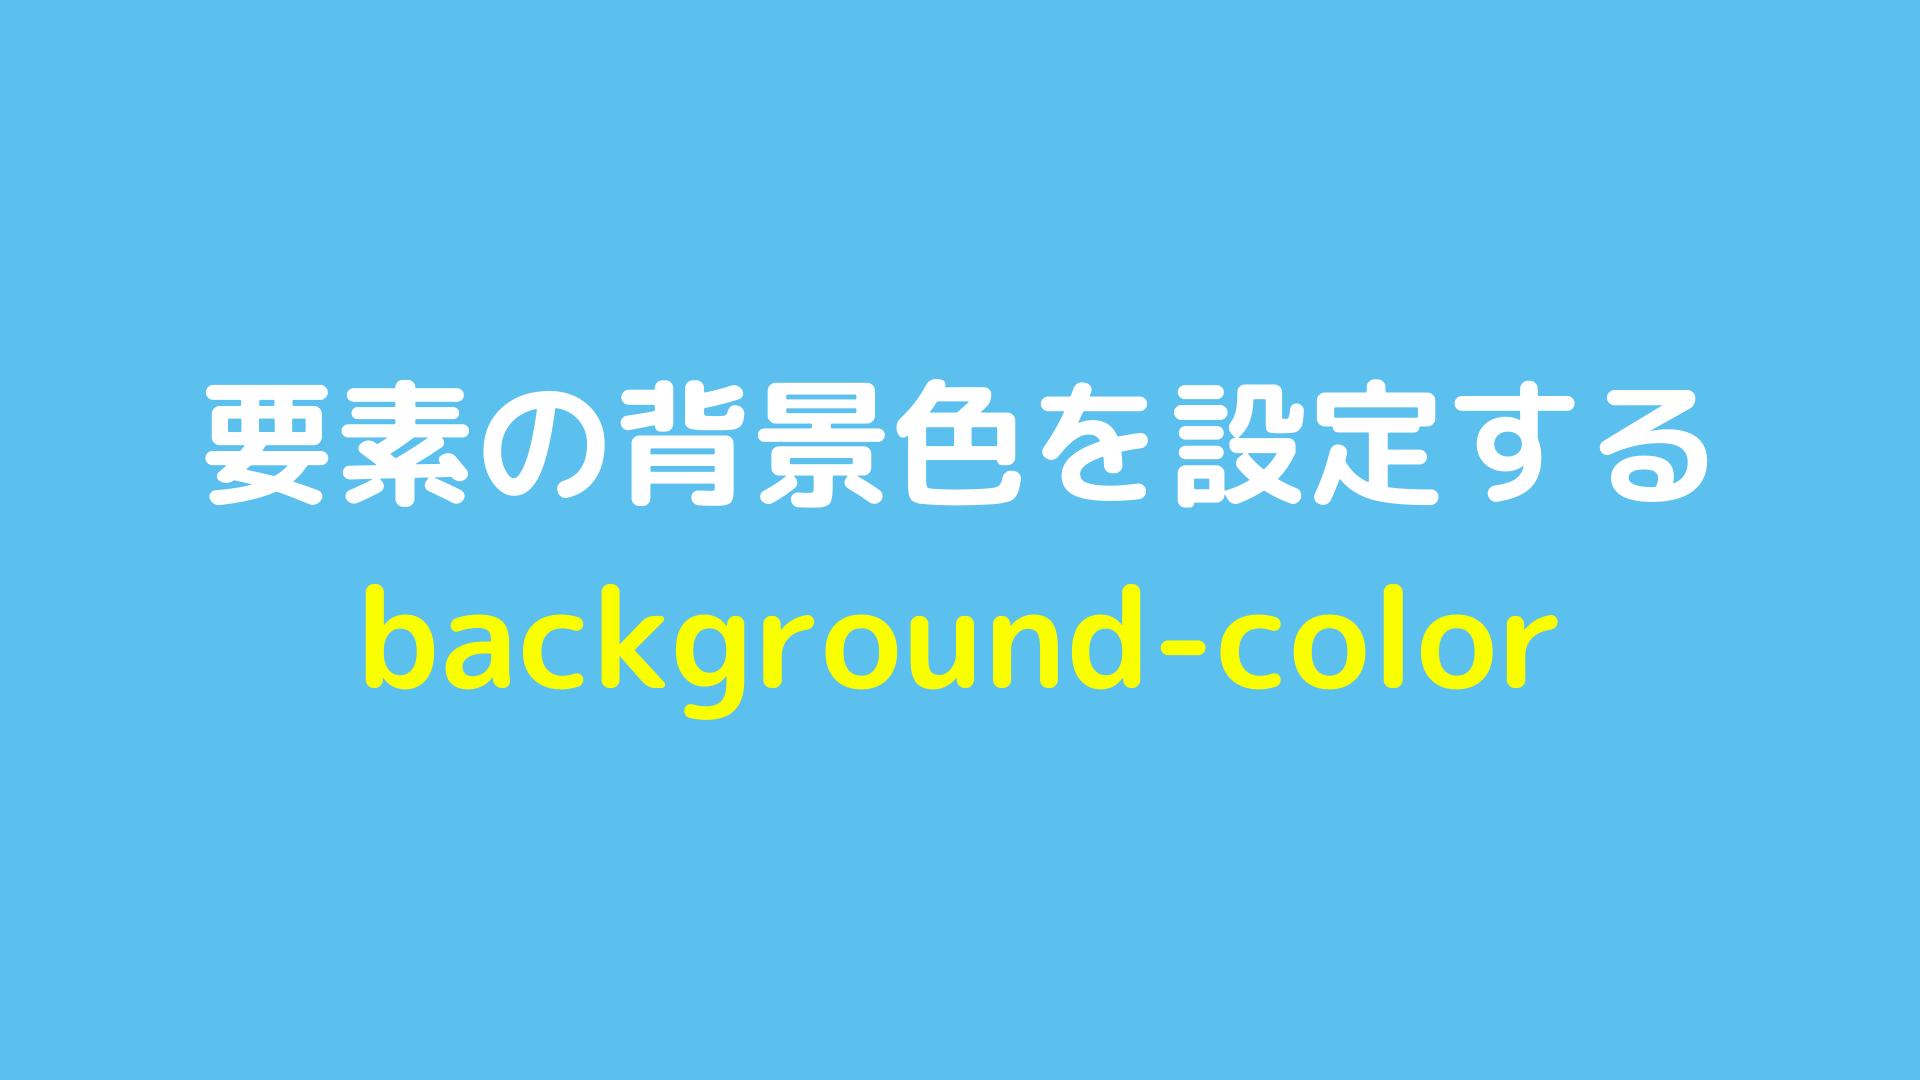 要素の背景色を設定するbackground-colorについて解説